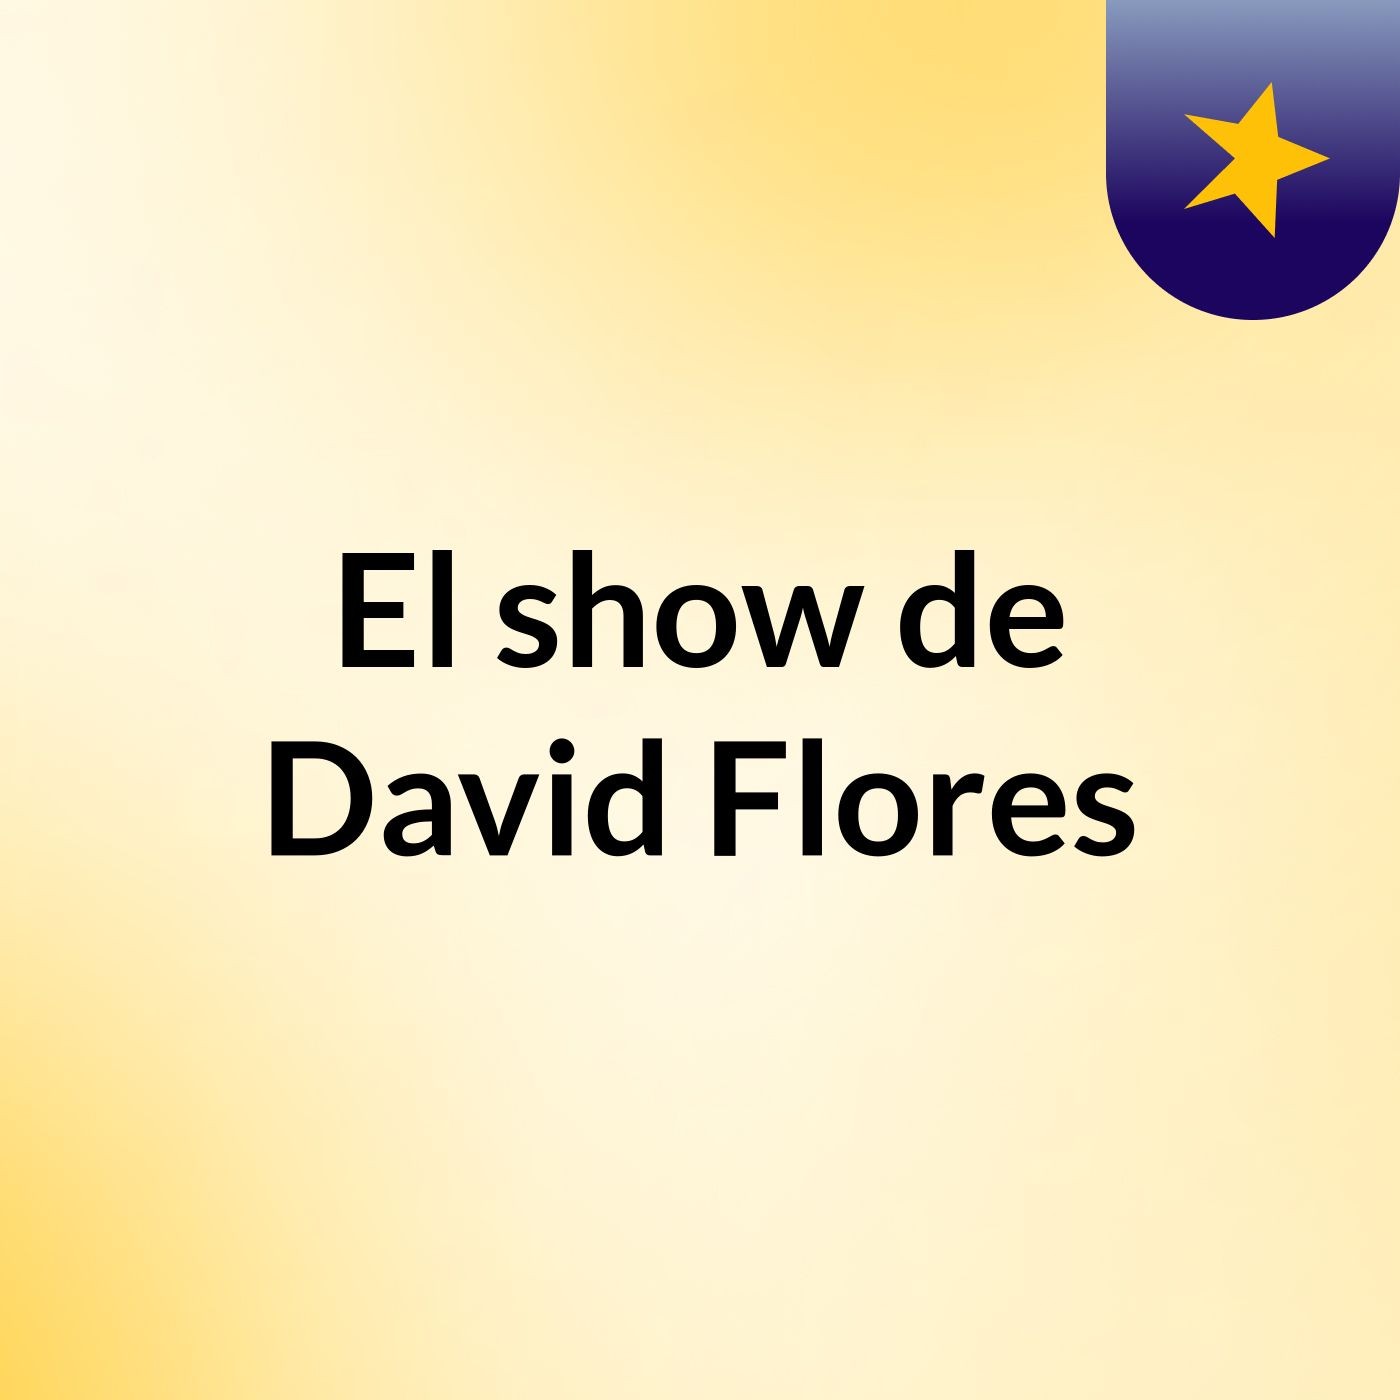 El show de David Flores